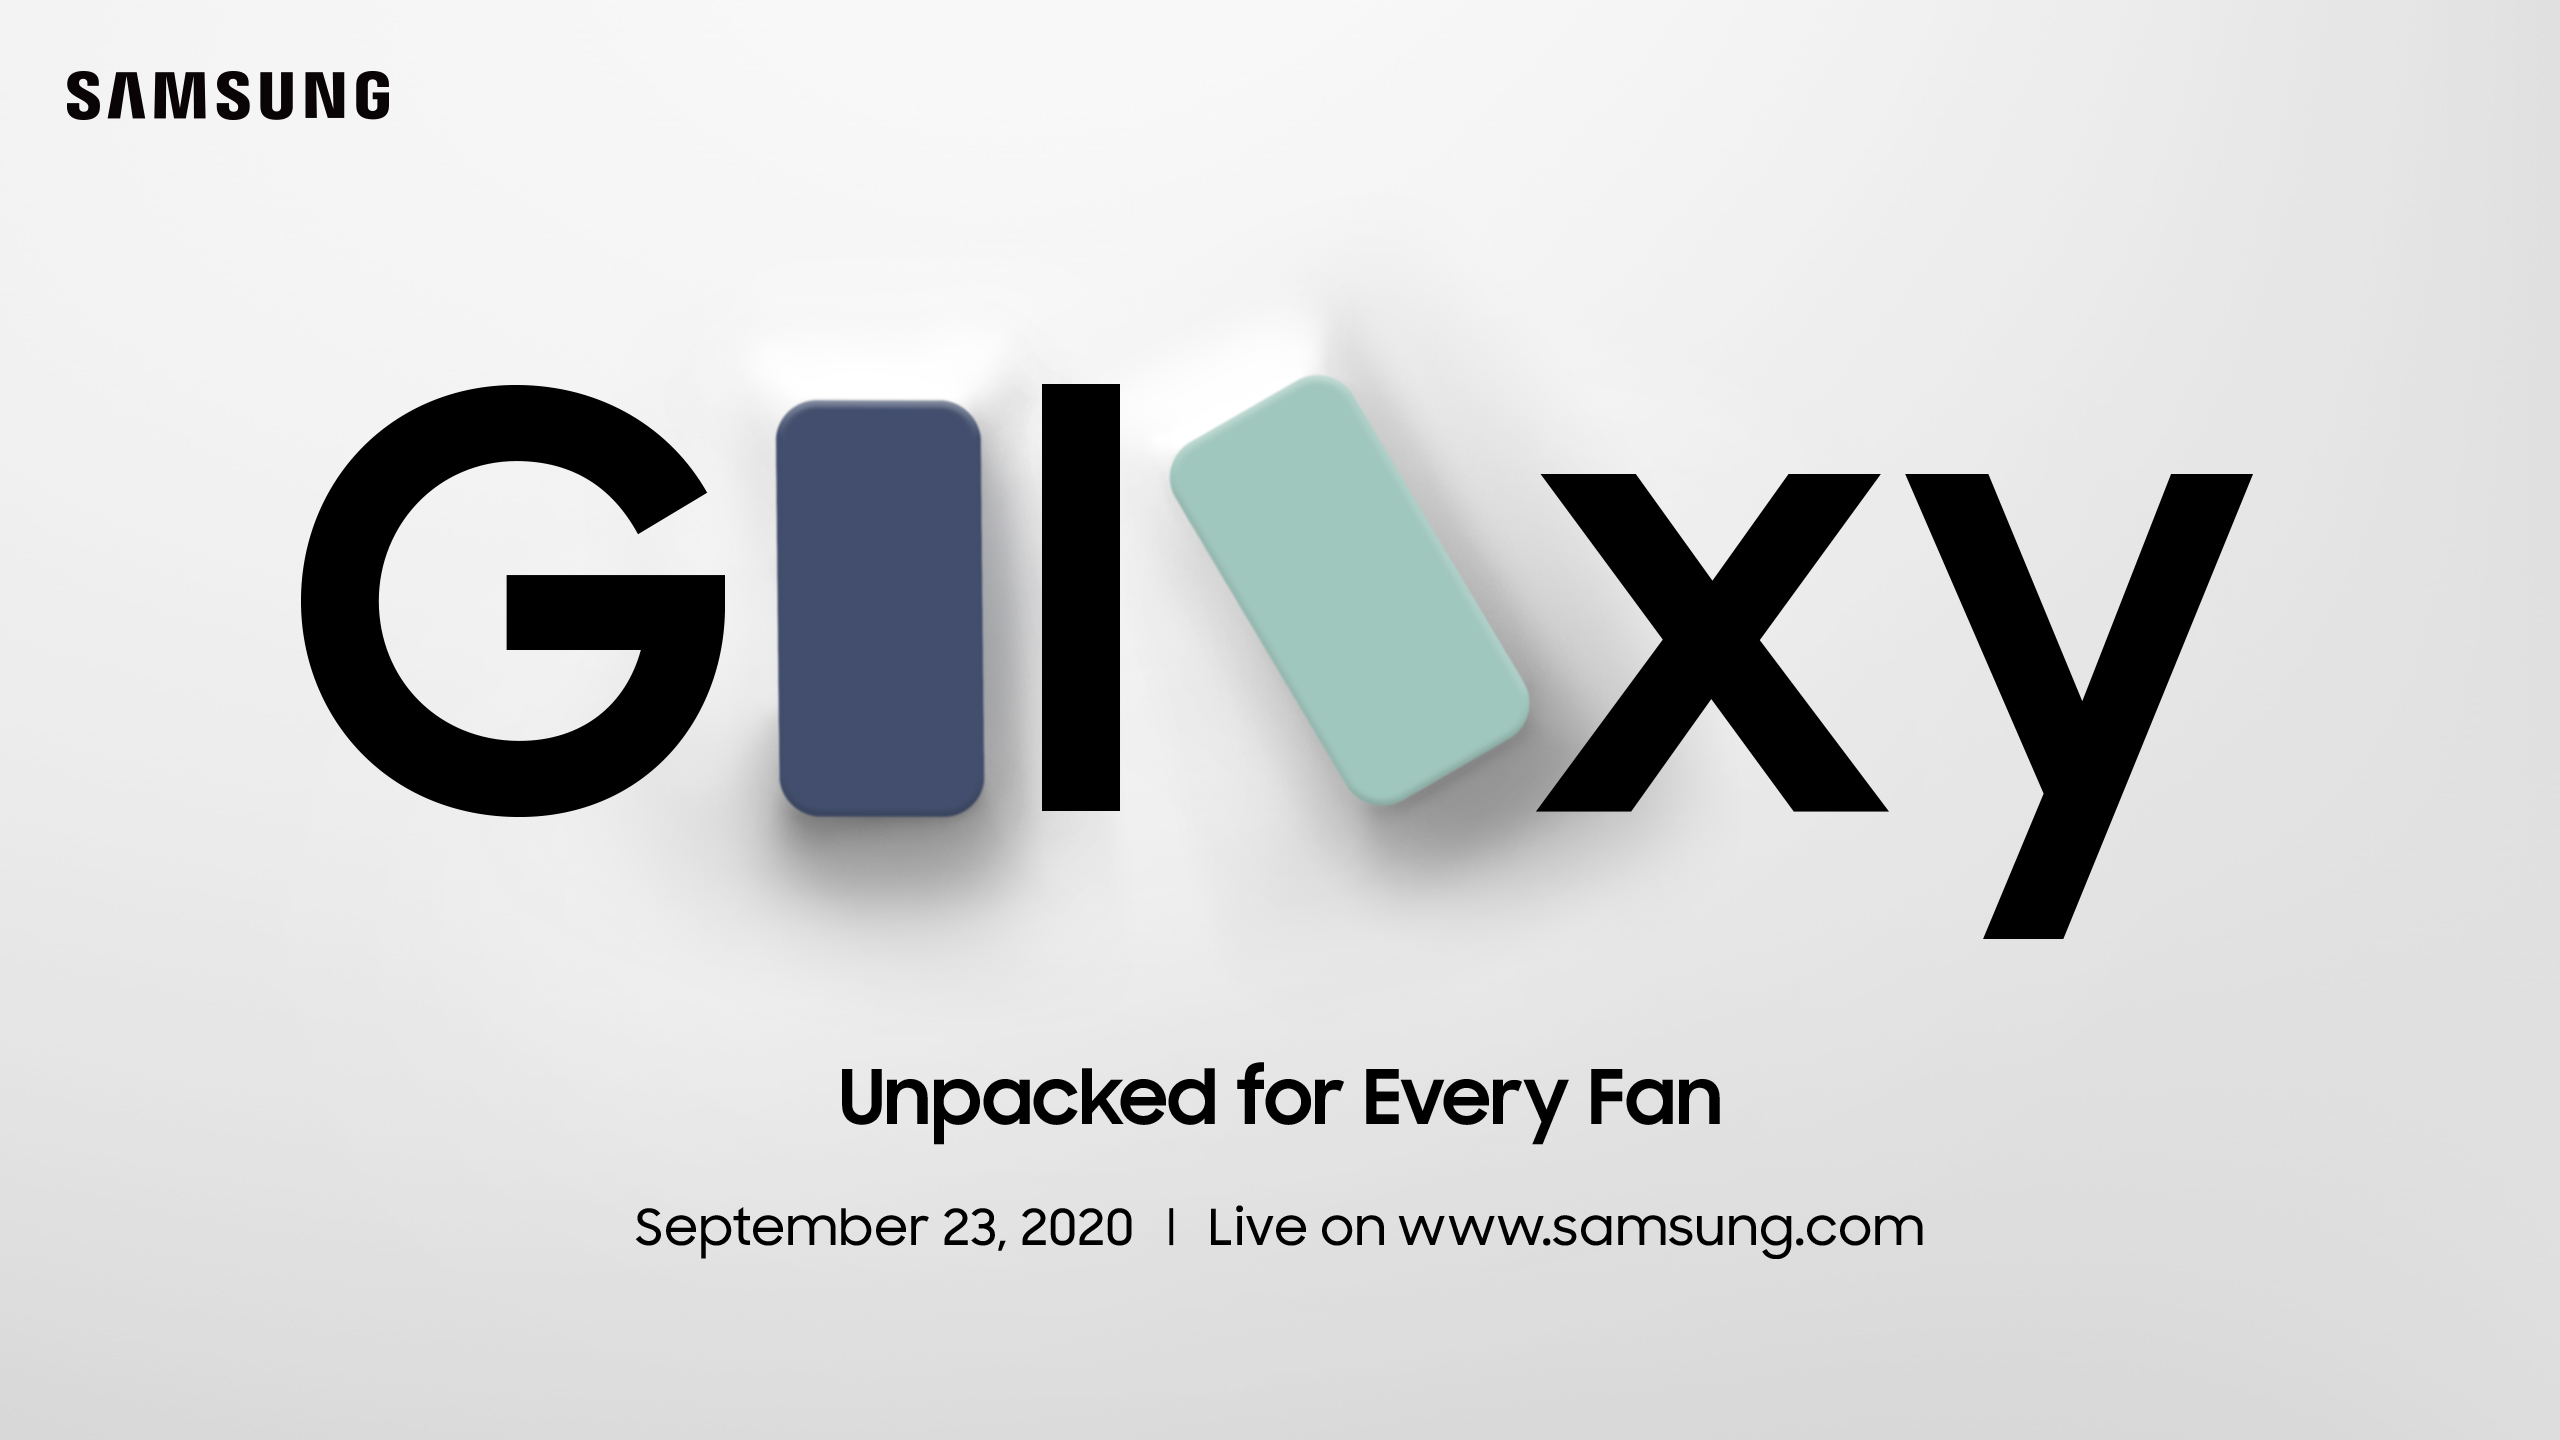 พบกับ Galaxy Unpacked for Every Fan งานไลฟ์เปิดตัวสมาร์ทโฟนล่าสุดจากซัมซุง วันพุธที่ 23 ก.ย.นี้ 21.00 น. (เวลาประเทศไทย)